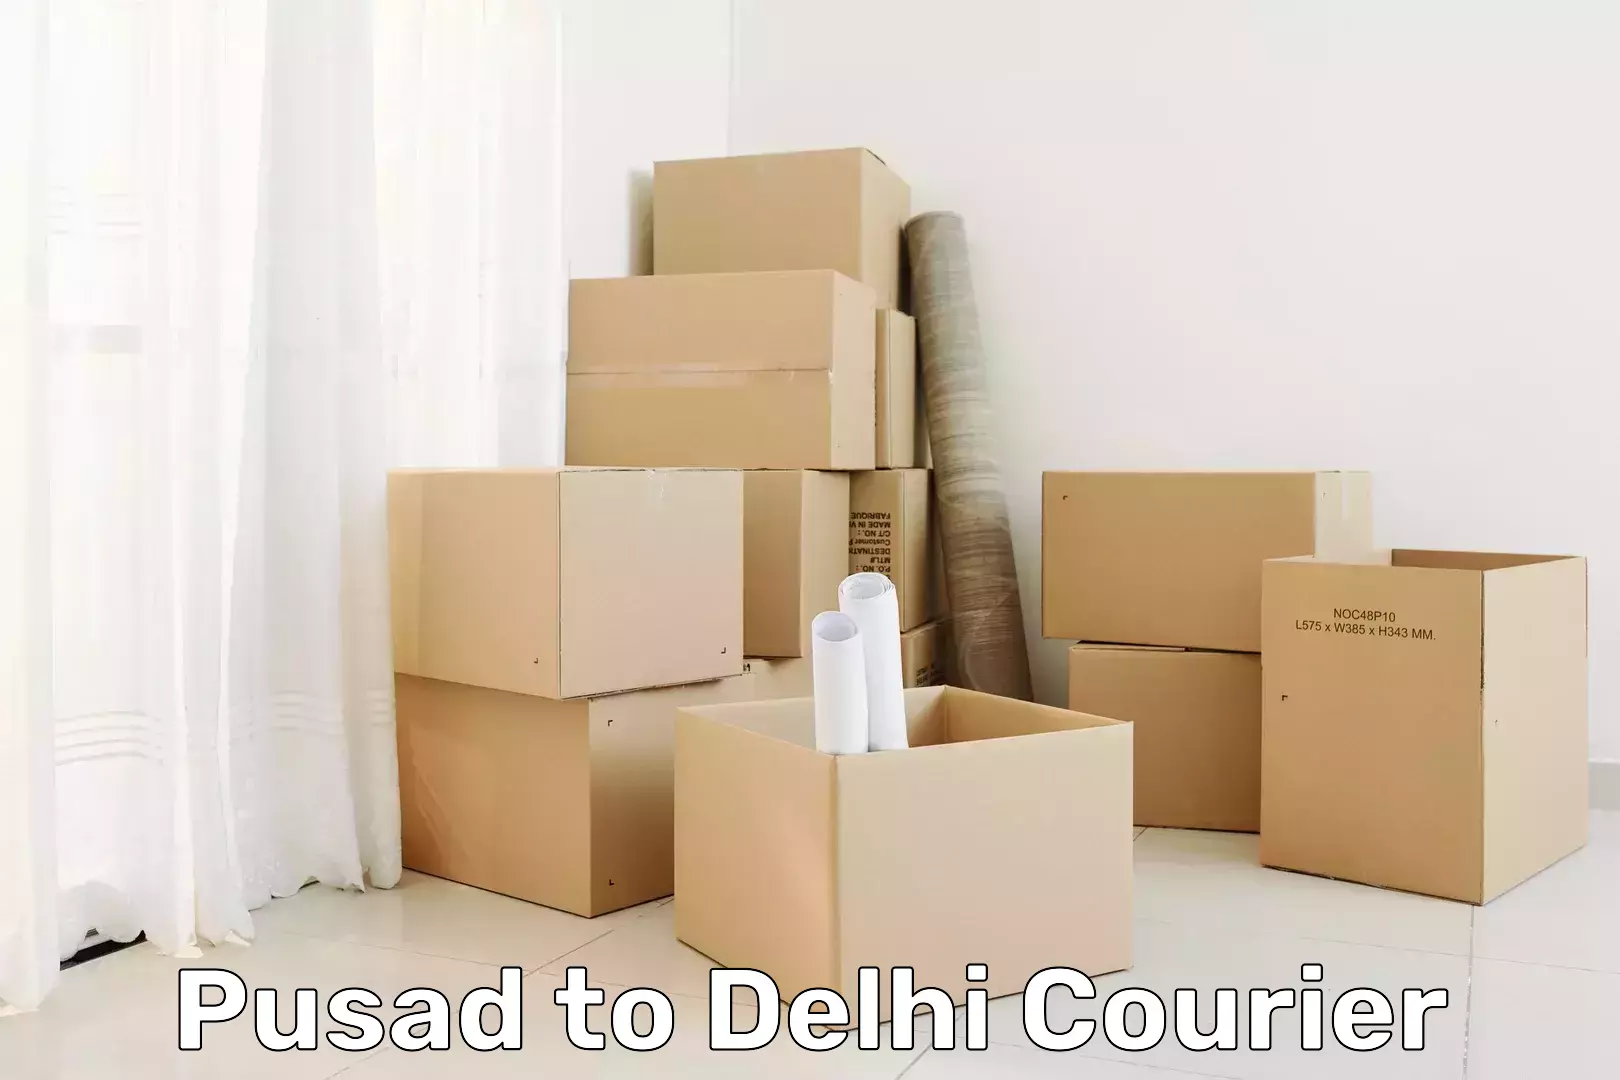 Courier service comparison Pusad to Delhi